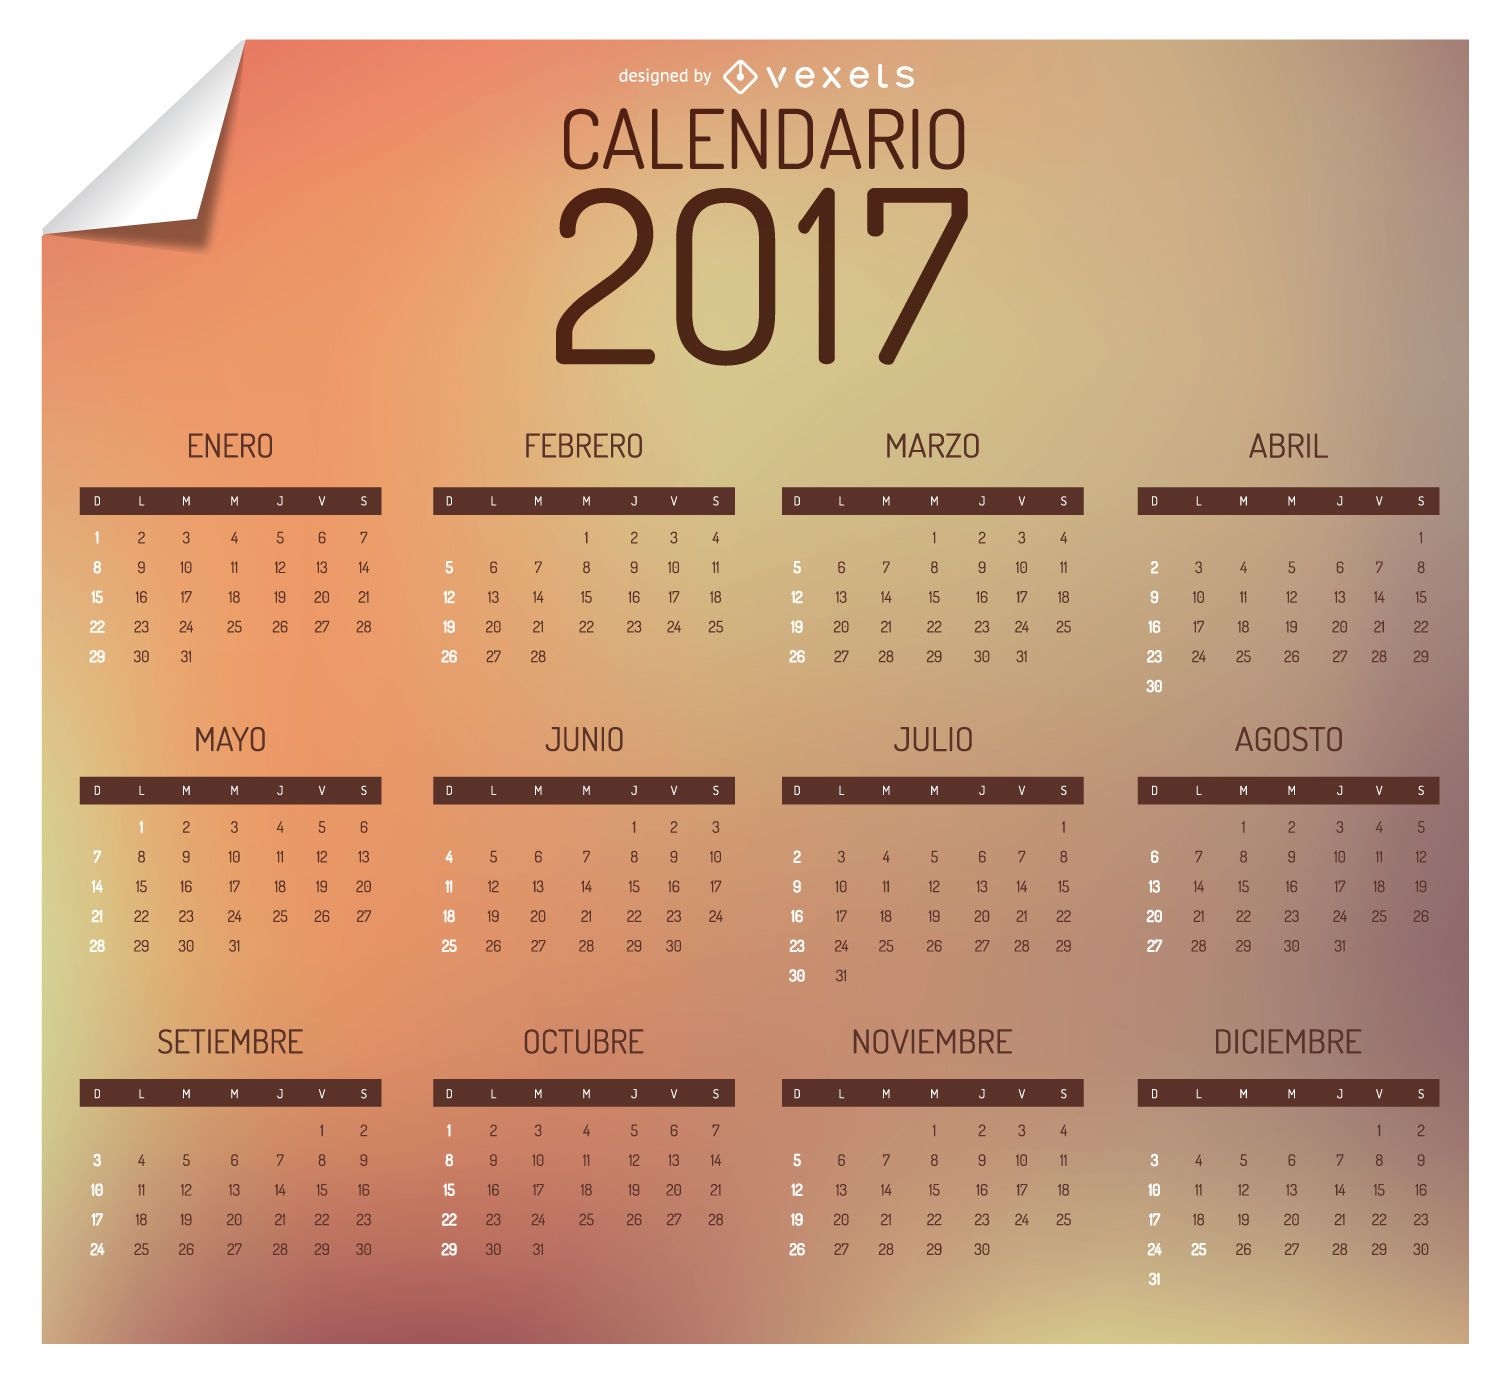 2017 calendar in spanish